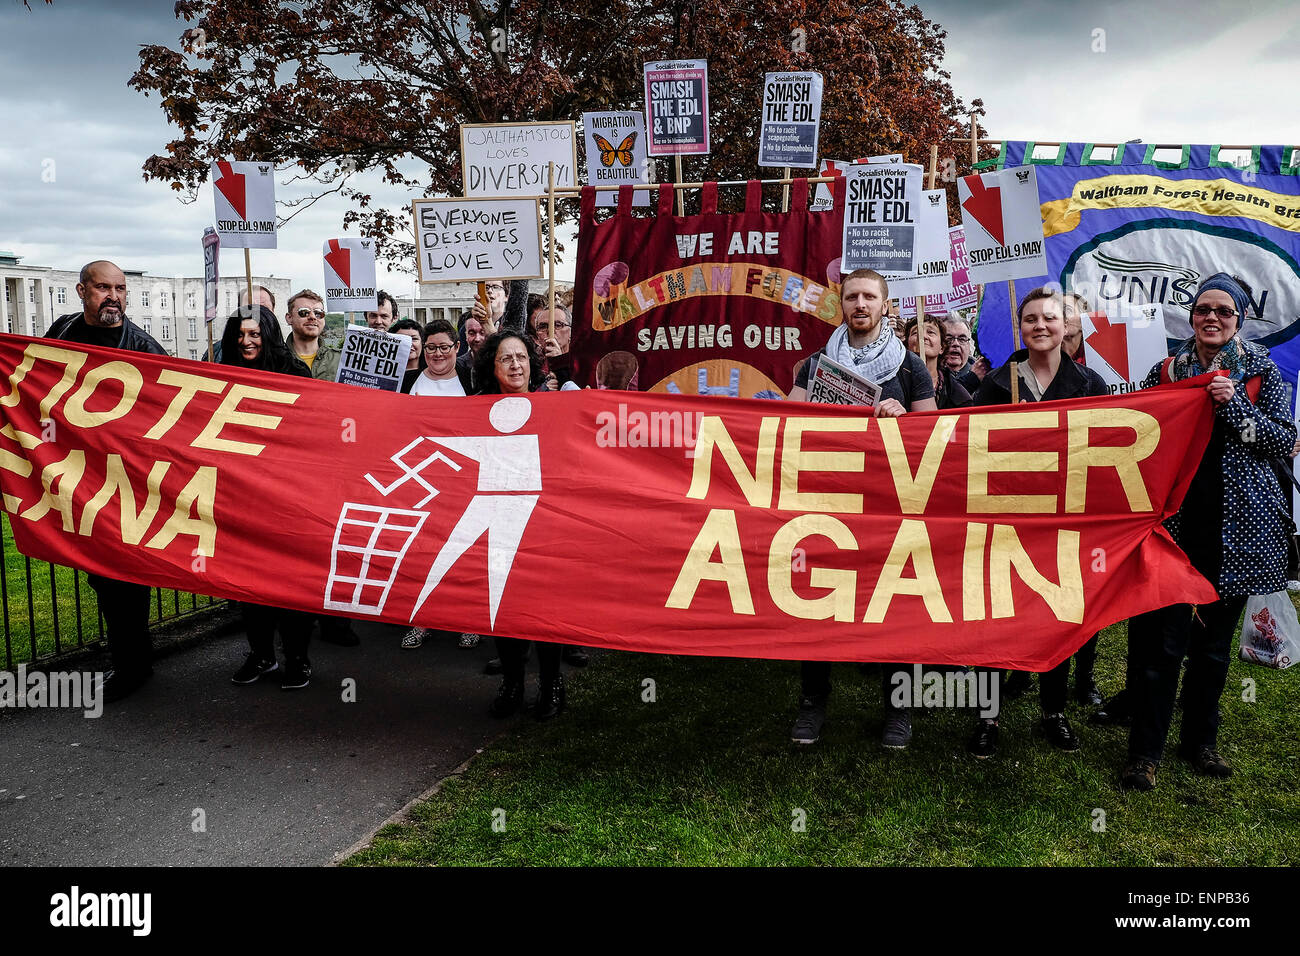 Waltham Forest. Le 9 mai 2015. Anti-fascistes se rassemblent pour protester contre une marche organisée par la Ligue de défense anglaise. Photographe : Gordon 1928/Alamy Live News Banque D'Images